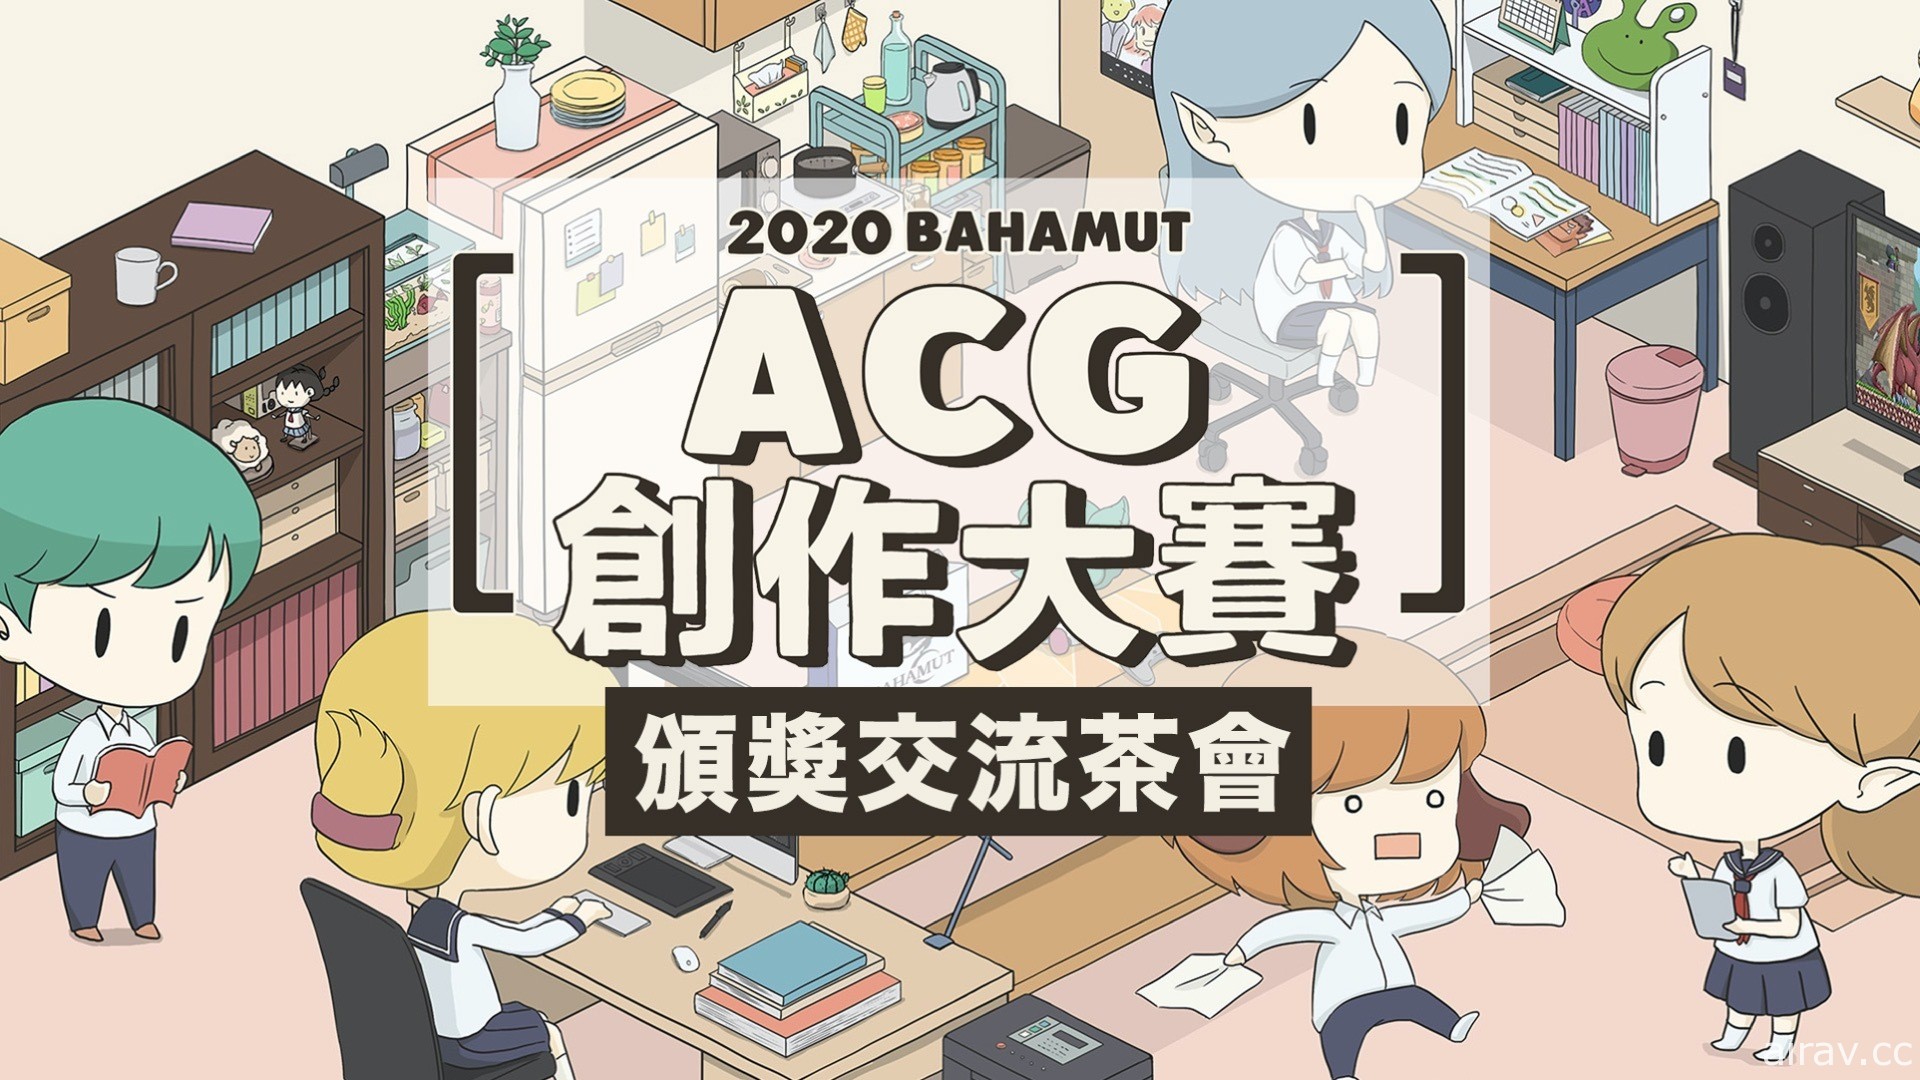 巴哈姆特 2020 ACG 创作大赛今颁奖 评审期许创作者为业界注入新活力